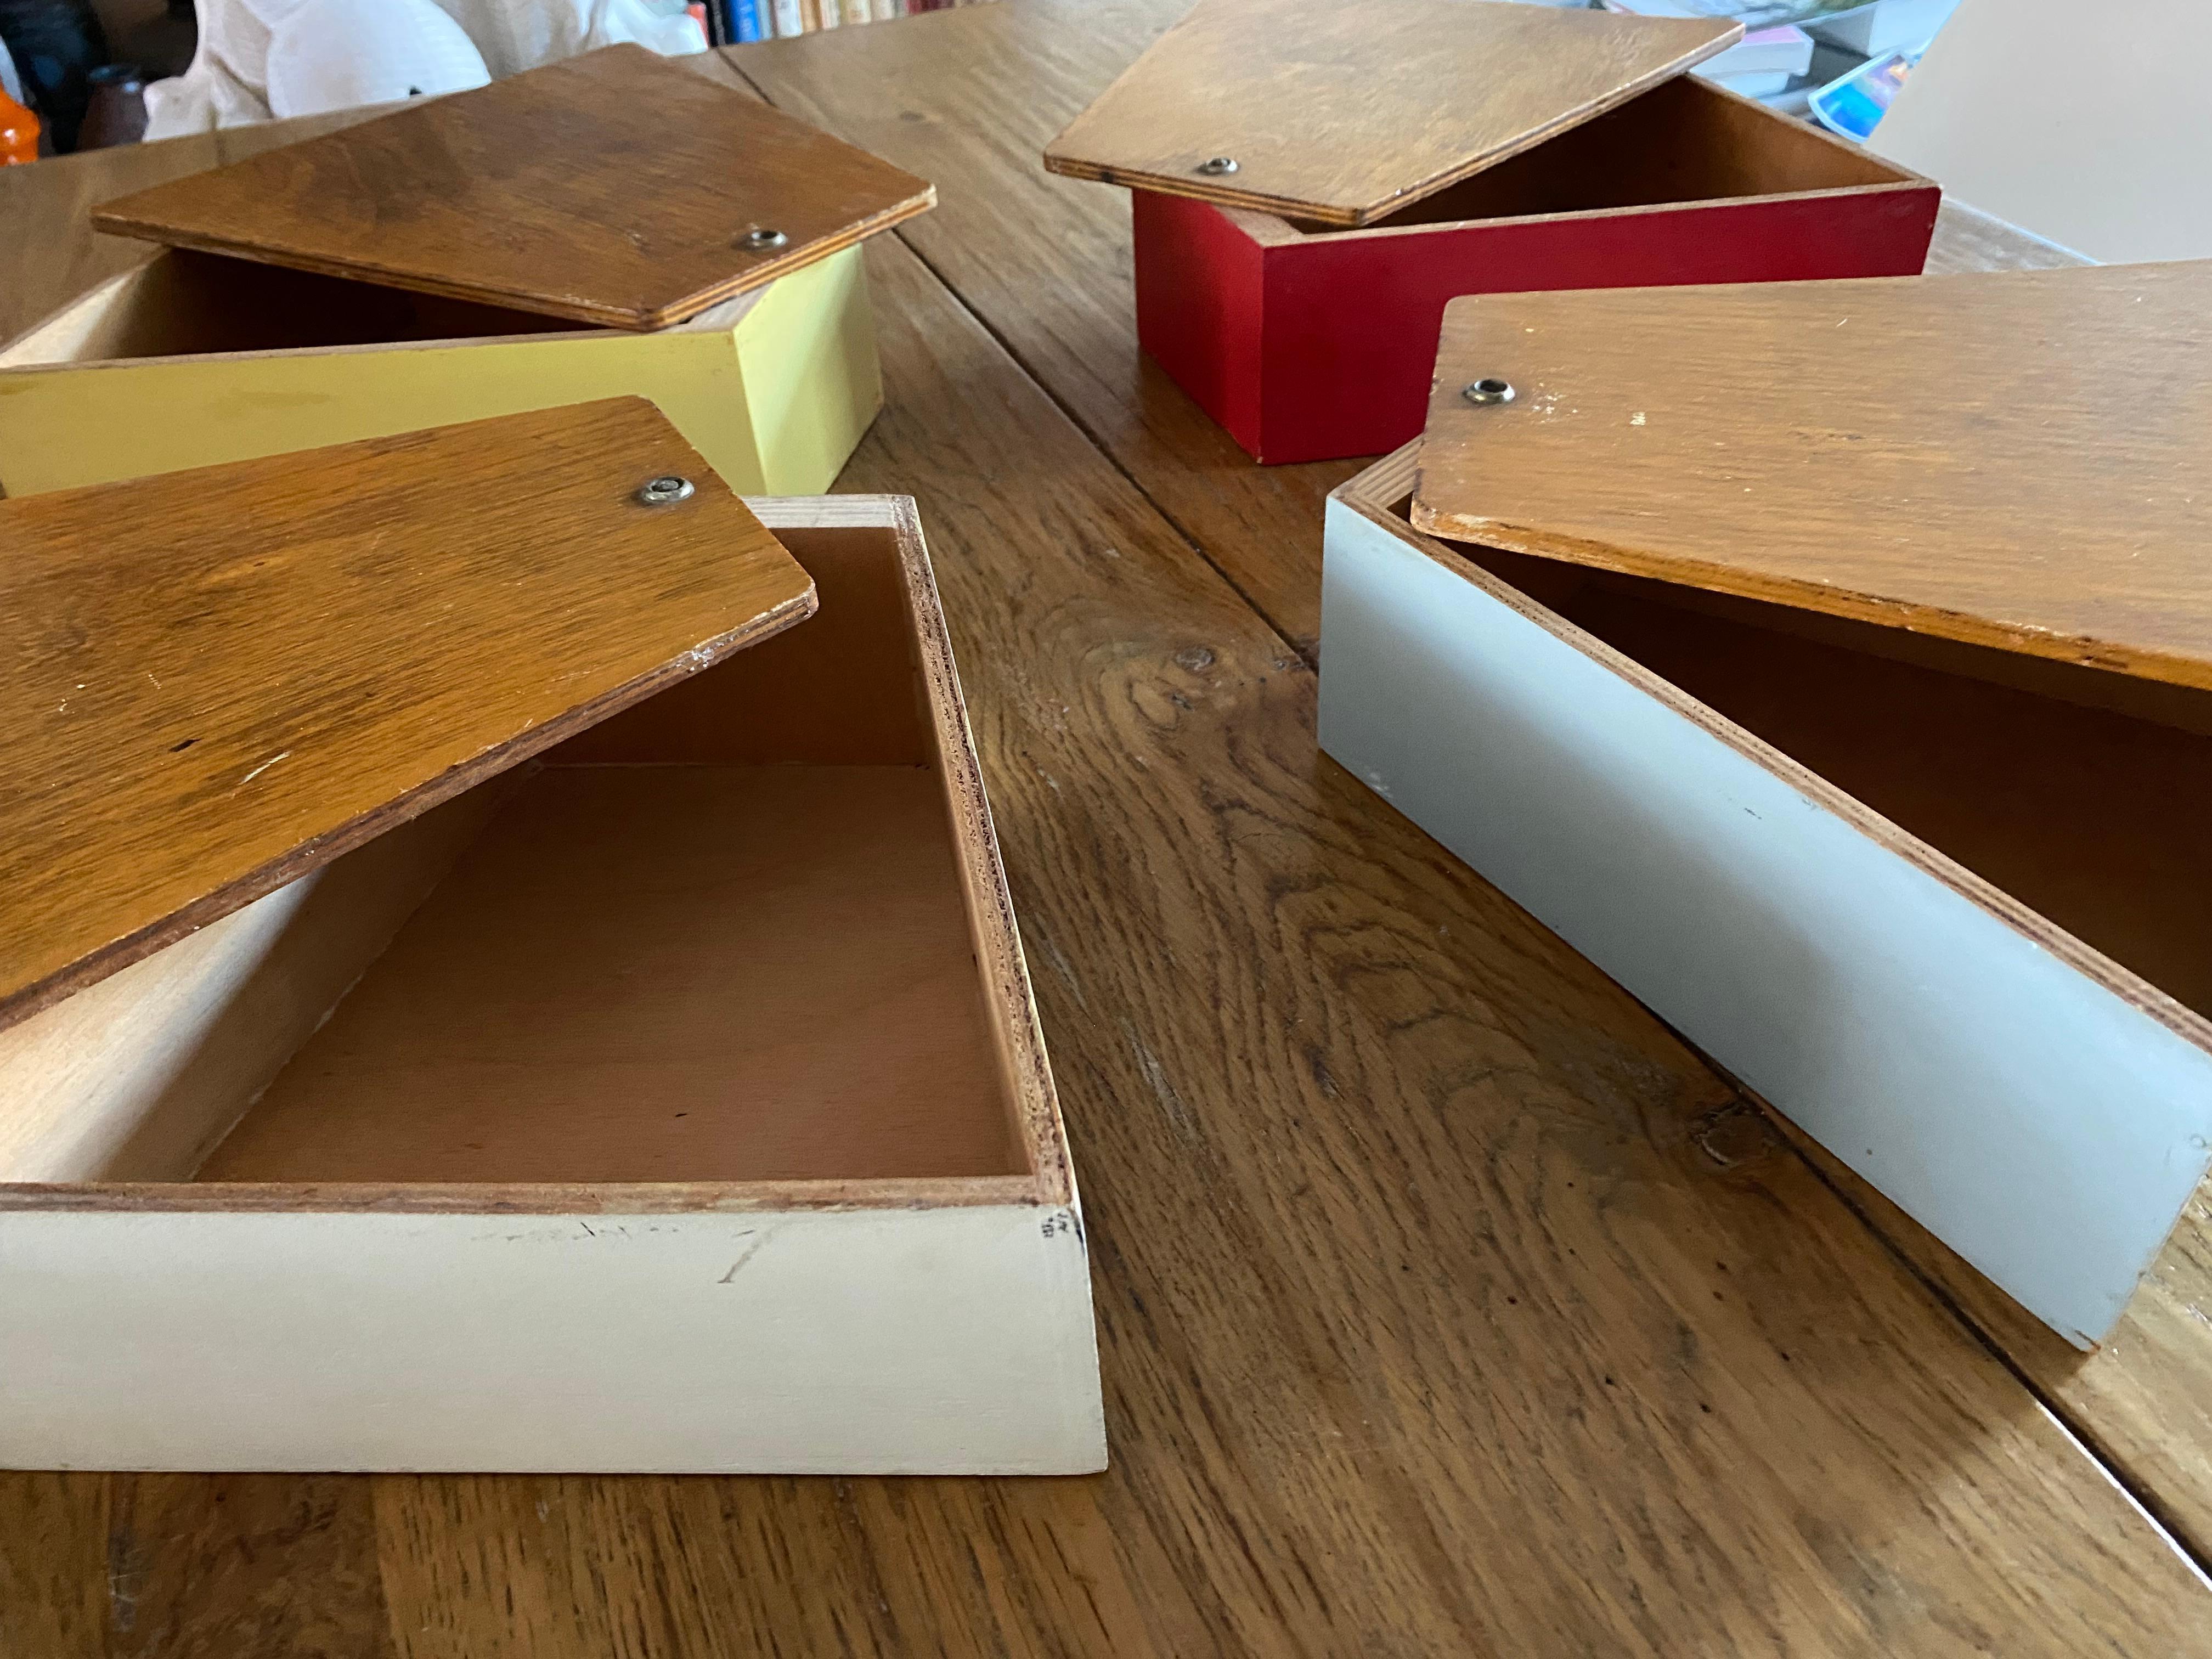 Stilvolles und dekoratives Nähkästchen / Aufbewahrungsbox, entworfen von Joost Teders für Metalux Netherlands im Jahr 1955. Die original lackierten Holzkisten in zarten Pastelltönen bilden einen schönen Kontrast zu den Sperrholzplatten aus Birke.